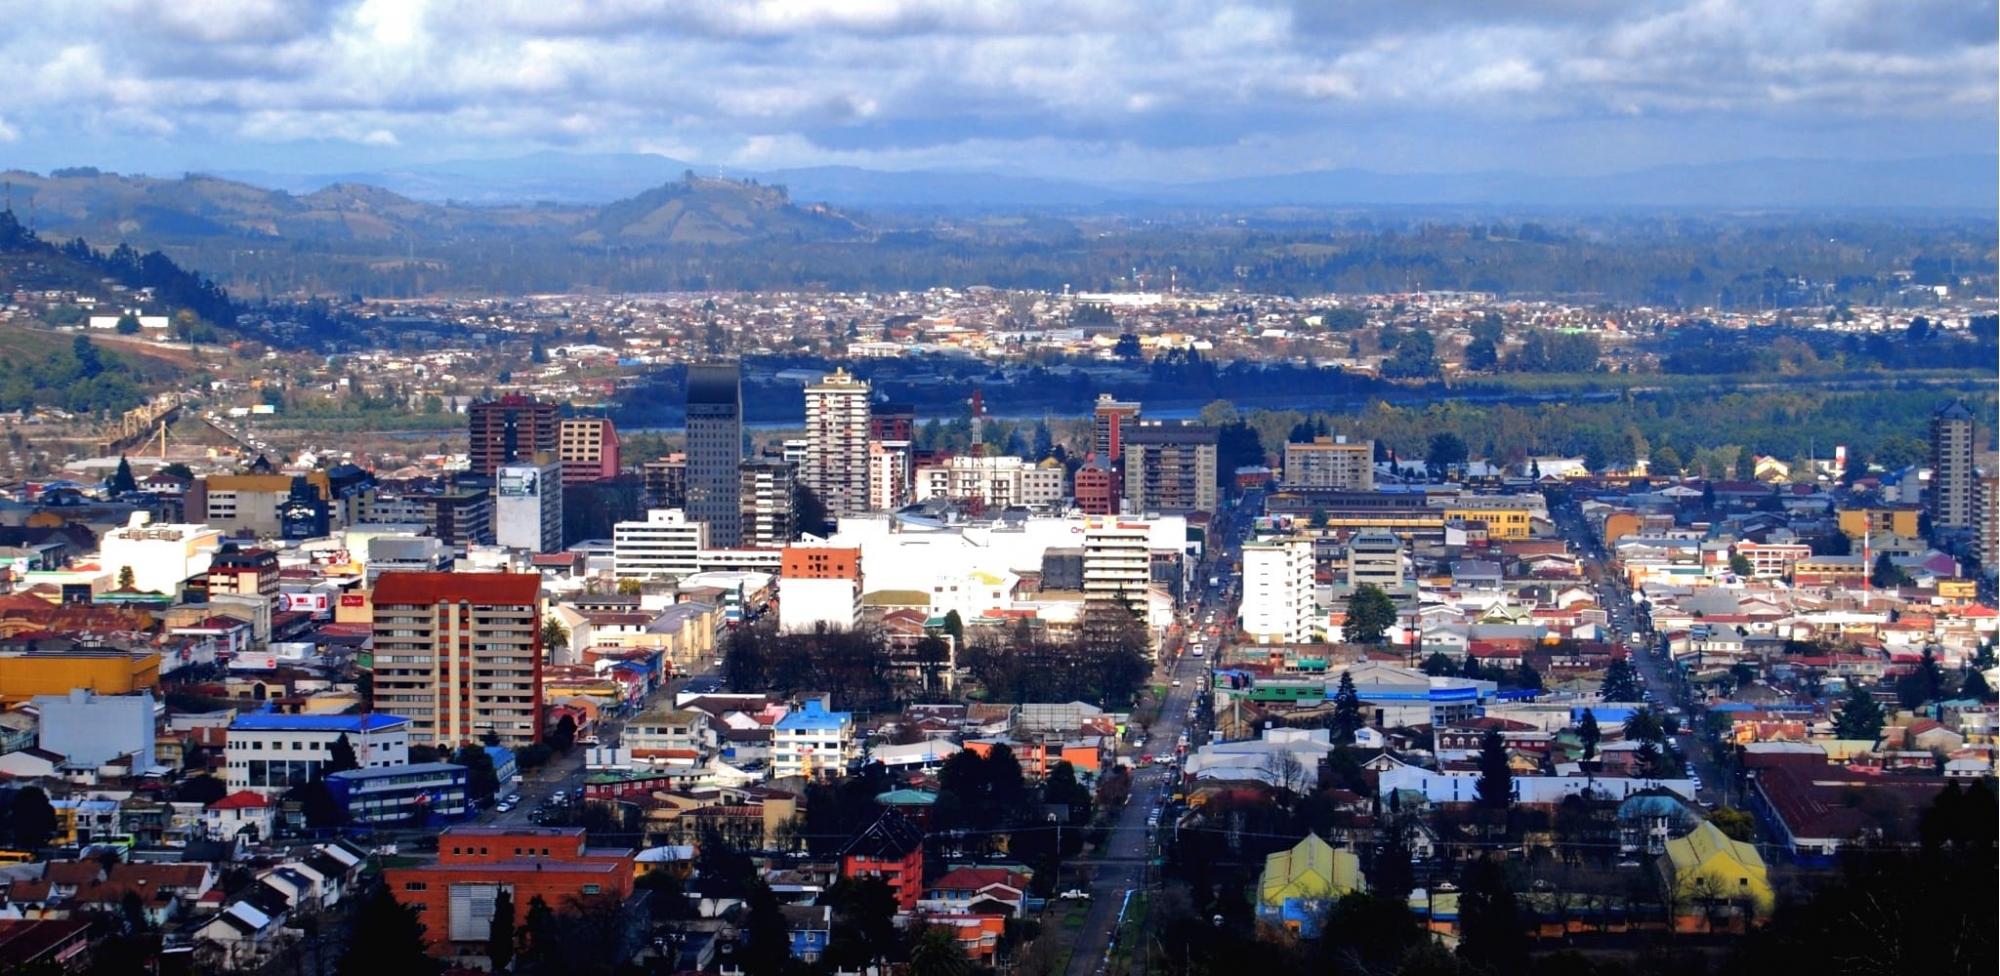 City of Temuco 